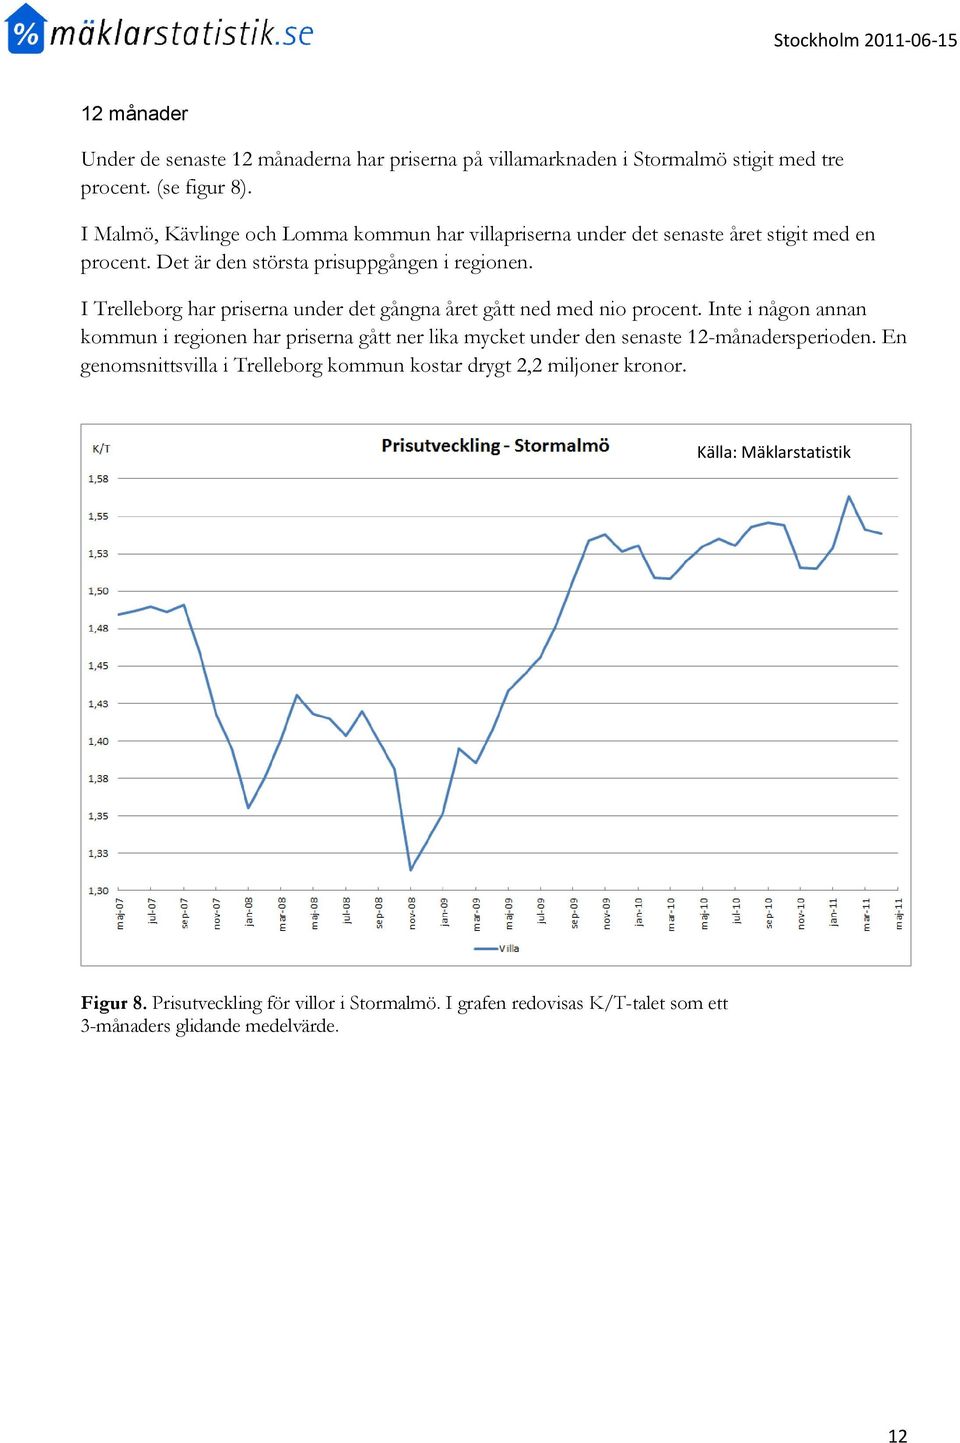 I Trelleborg har priserna under det gångna året gått ned med nio procent.